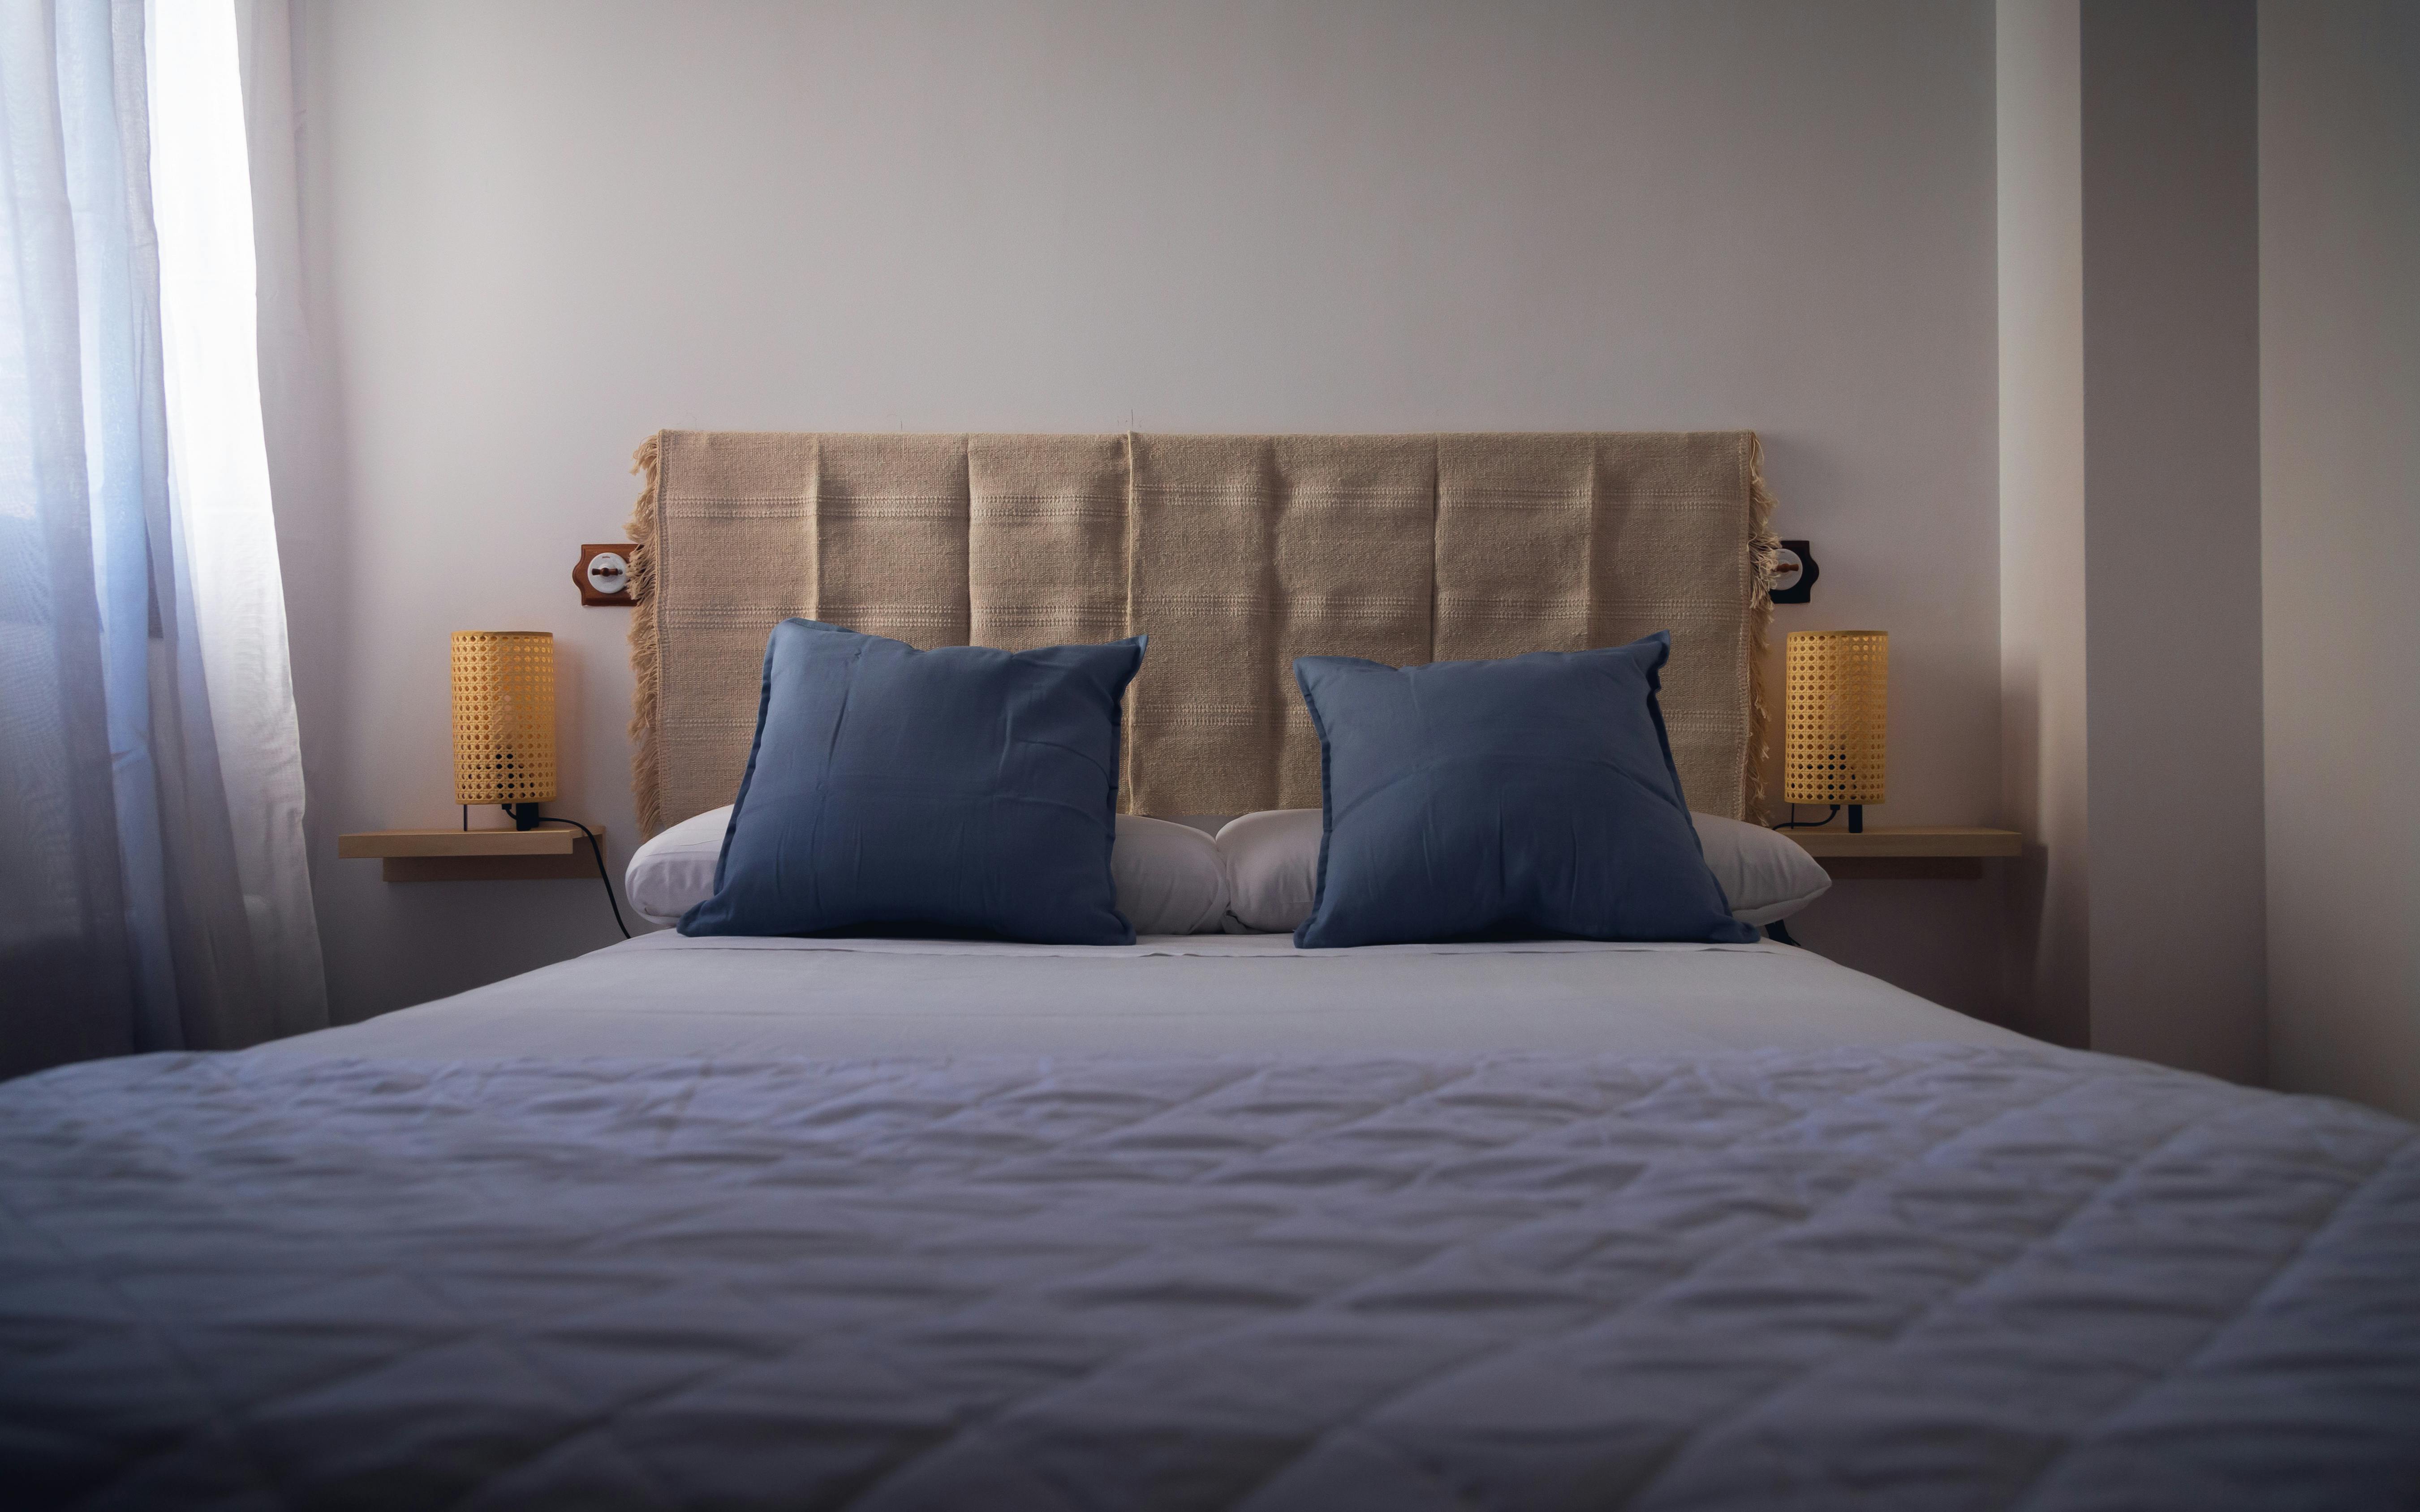 Doble estándar con 2 camas supletorias - Hotel Ciudad Navalcarnero -  Navalcarnero